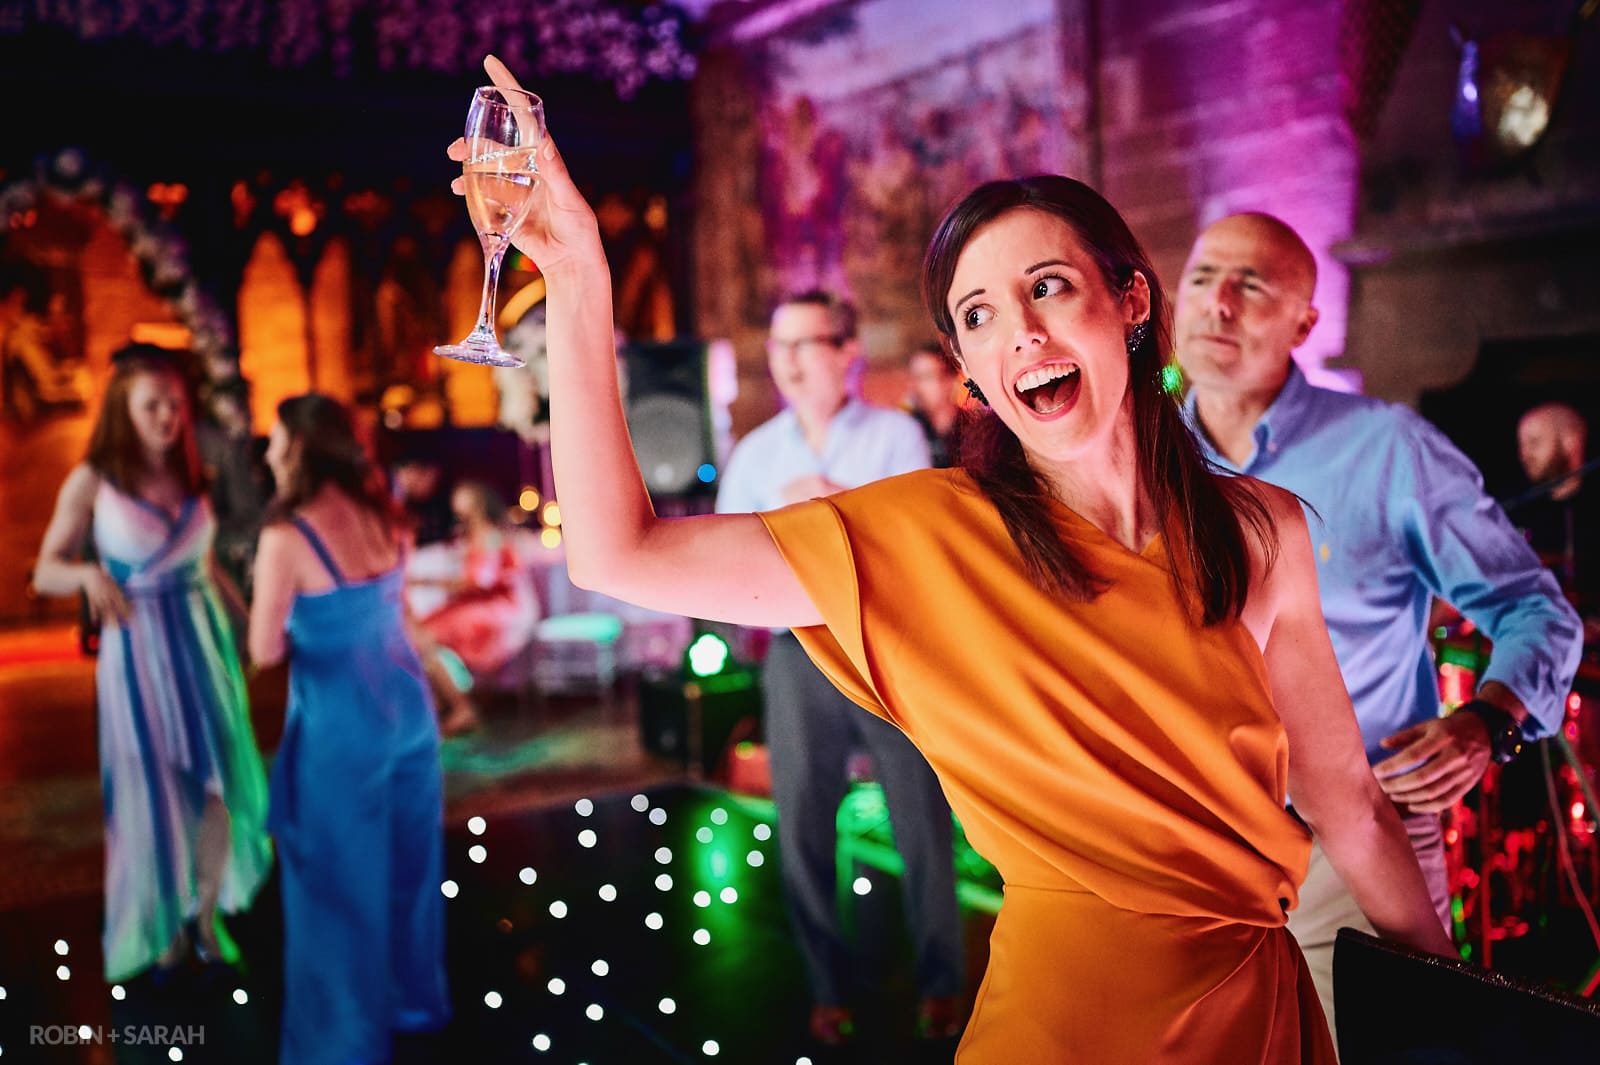 Wedding guest raises glass as she dances